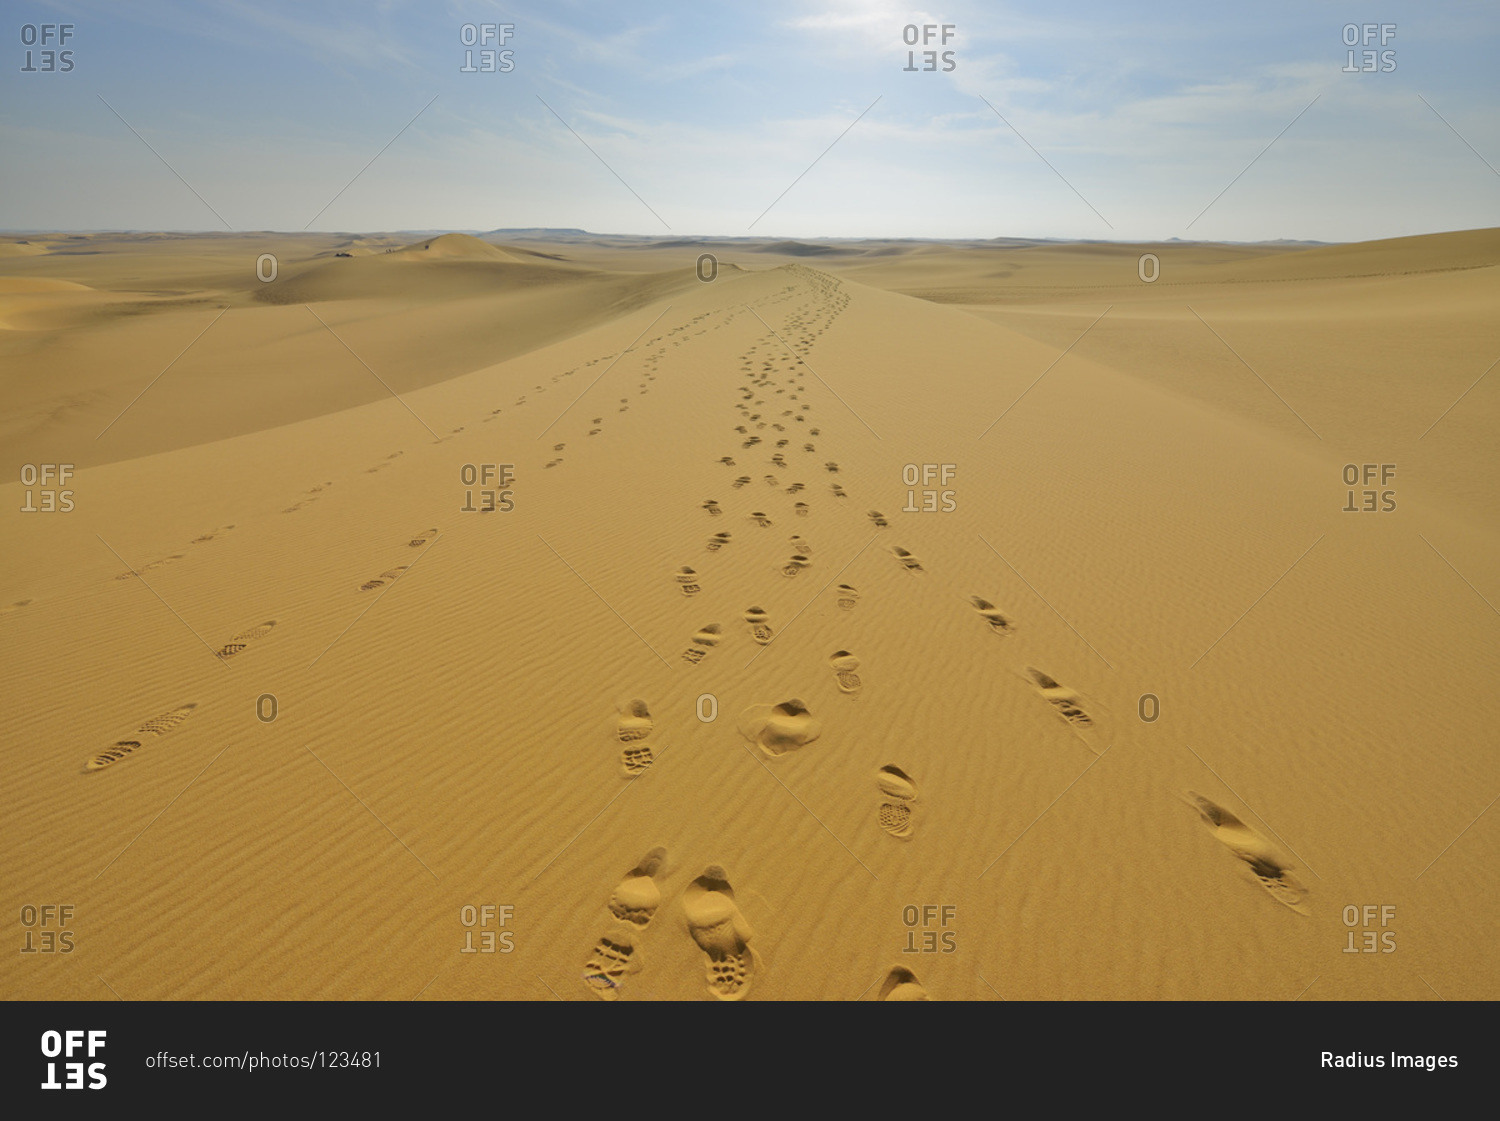 Footprints on sand dune, Matruh Governorate, Libyan Desert, Sahara Desert, Egypt, Africa